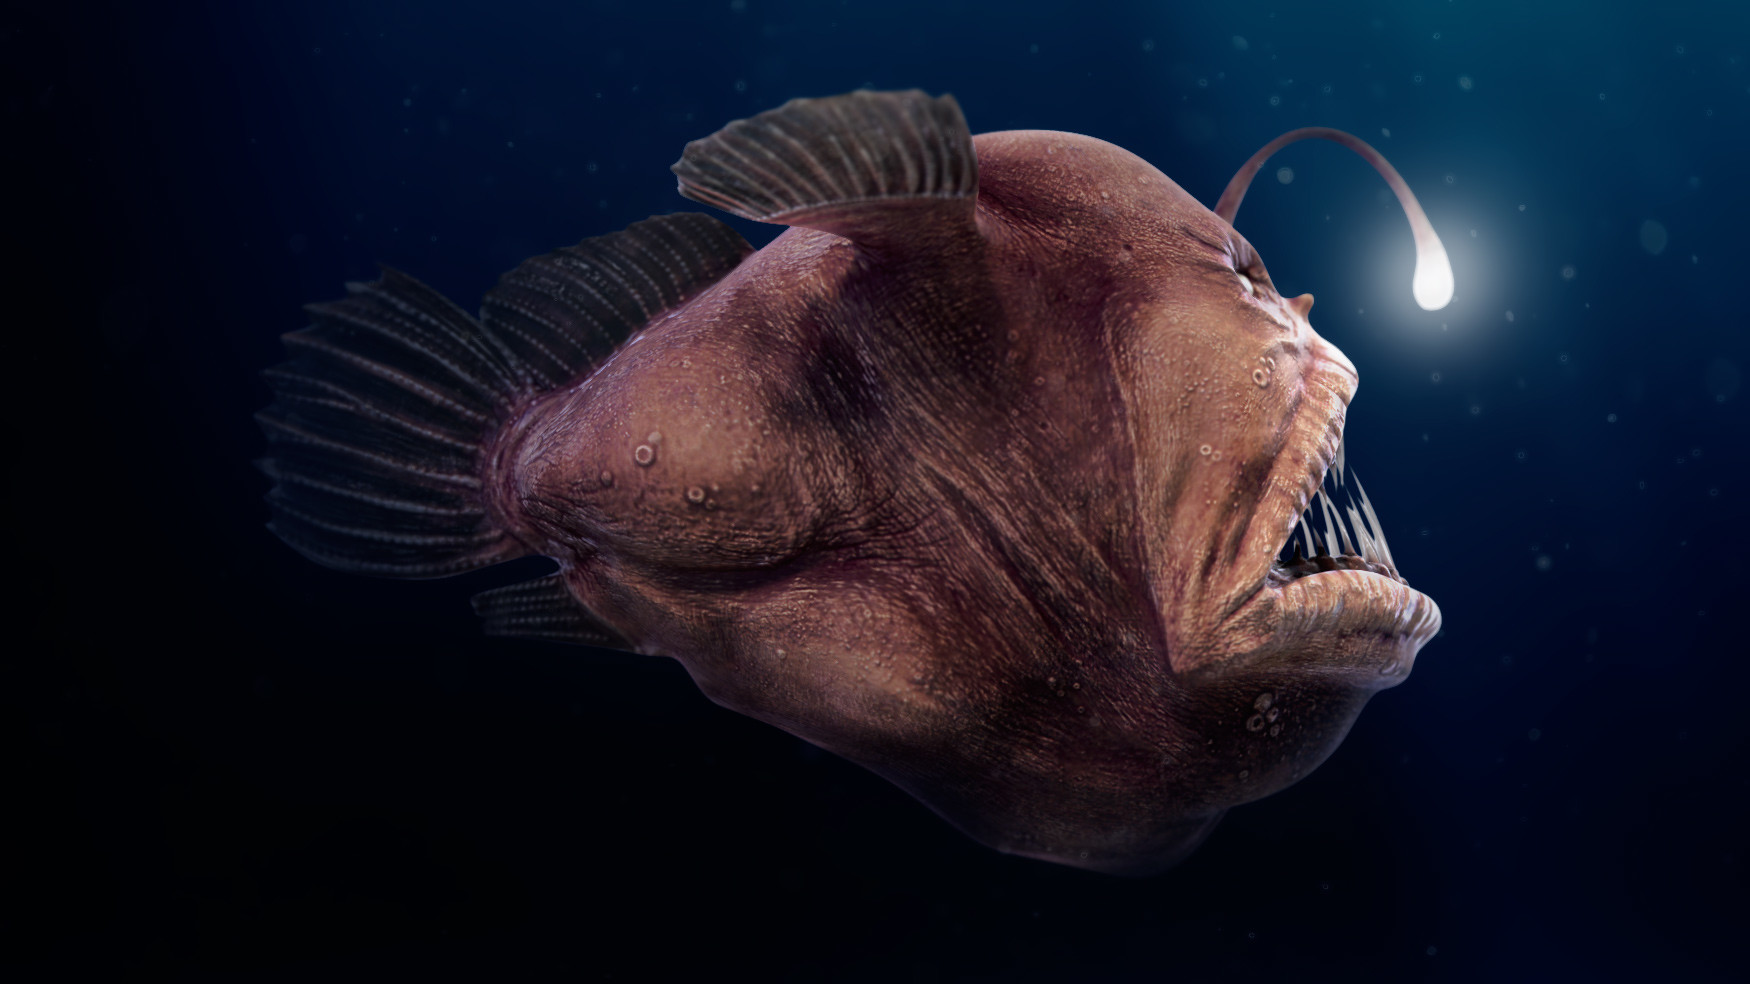 Giới thiệu chung về loài cá quỷ Anglerfish